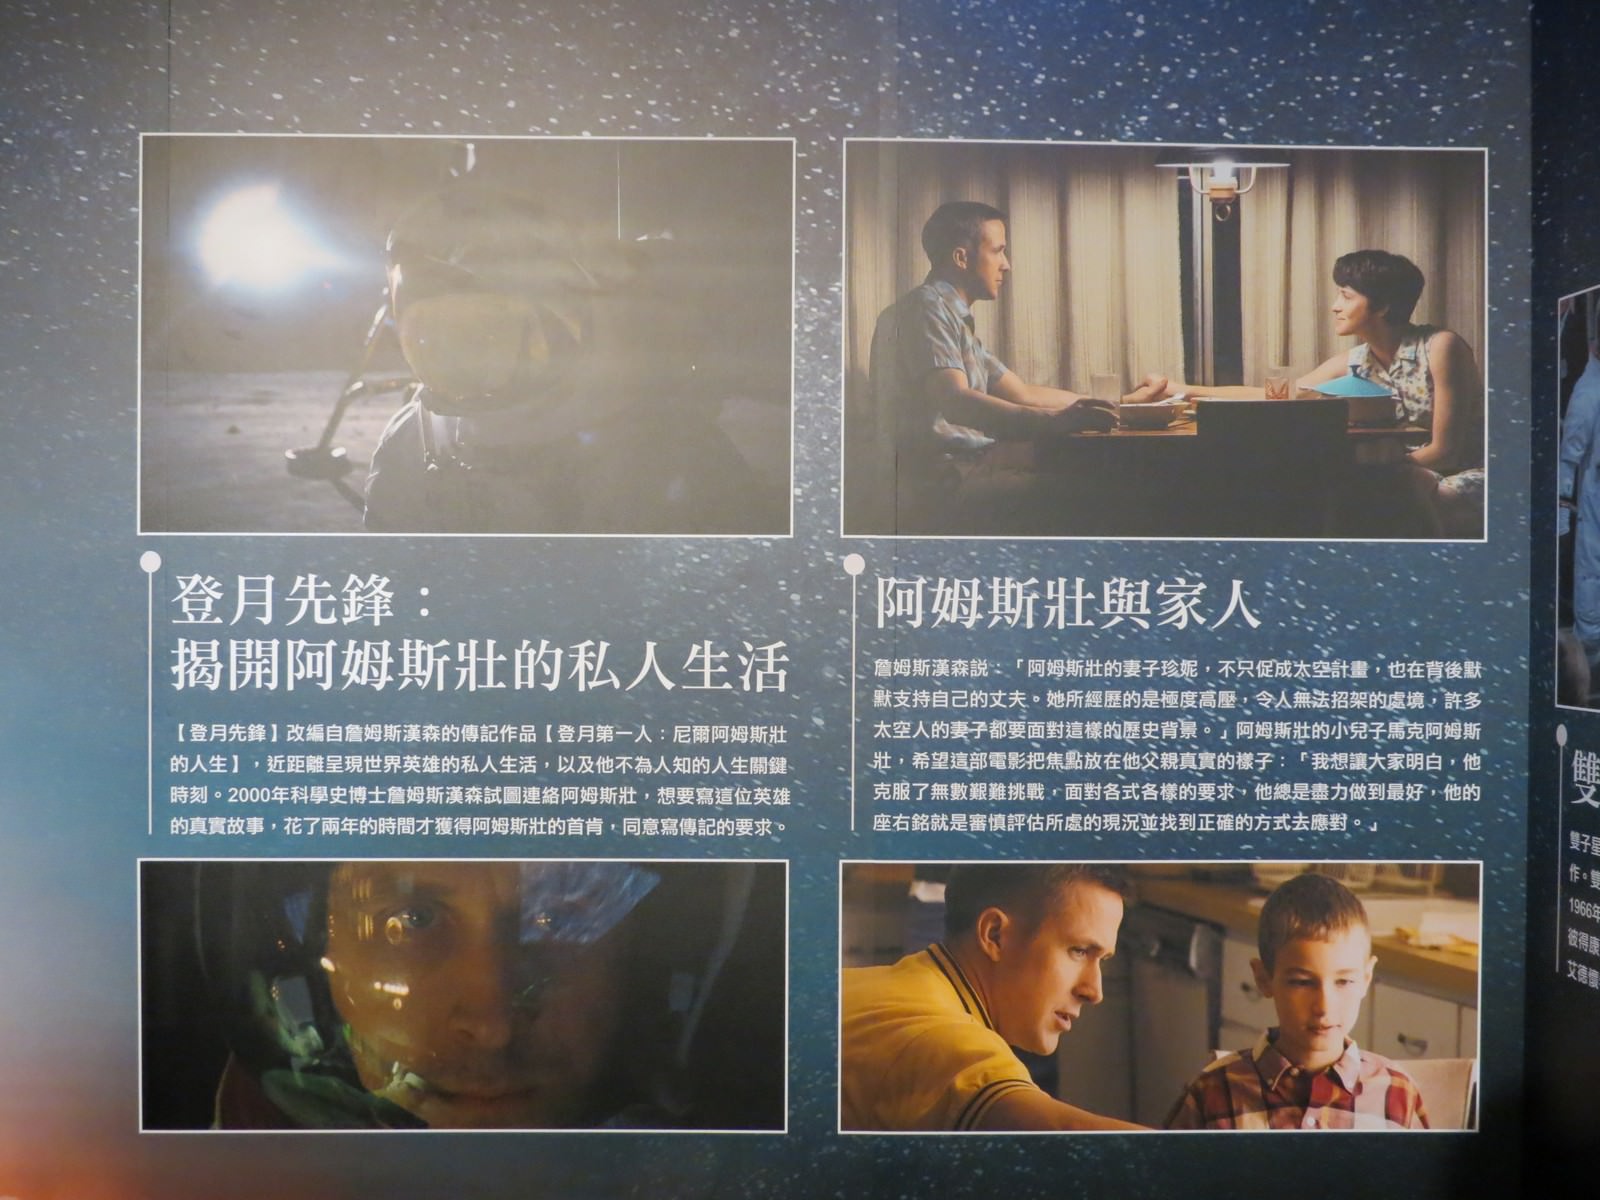 Movie, First Man(美國, 2018年) / 登月先鋒(台灣) / 登月第一人(中國.香港), 廣告看板, 大直美麗華影城